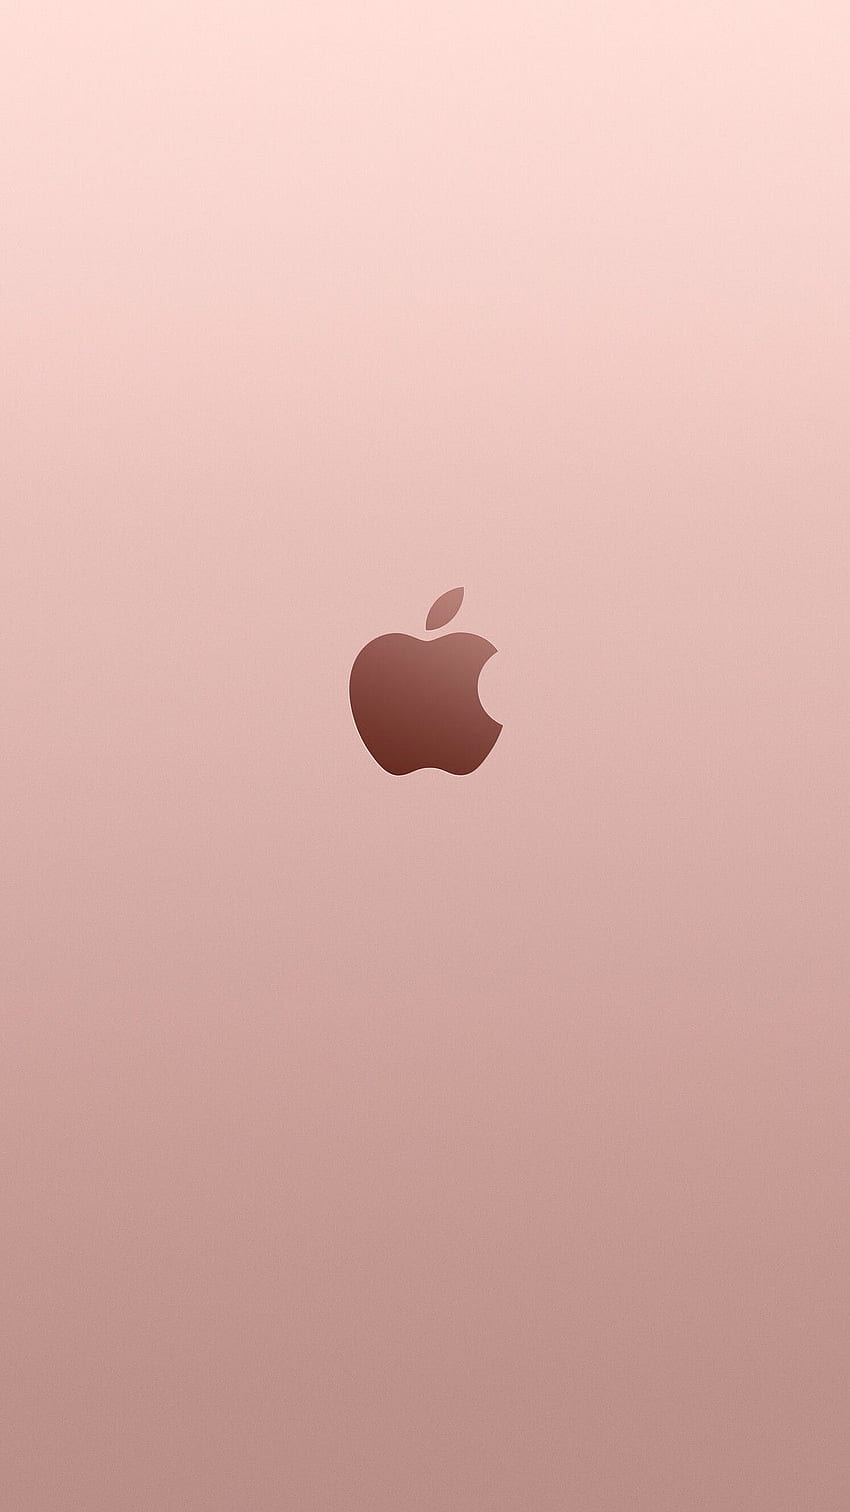 Qua logo táo vàng hồng, bạn sẽ thấy sự chuyên nghiệp và sáng tạo của công ty đó. Màu sắc và hình dáng của logo sẽ khiến bạn cảm thấy thuyết phục và tin tưởng vào thương hiệu đó.